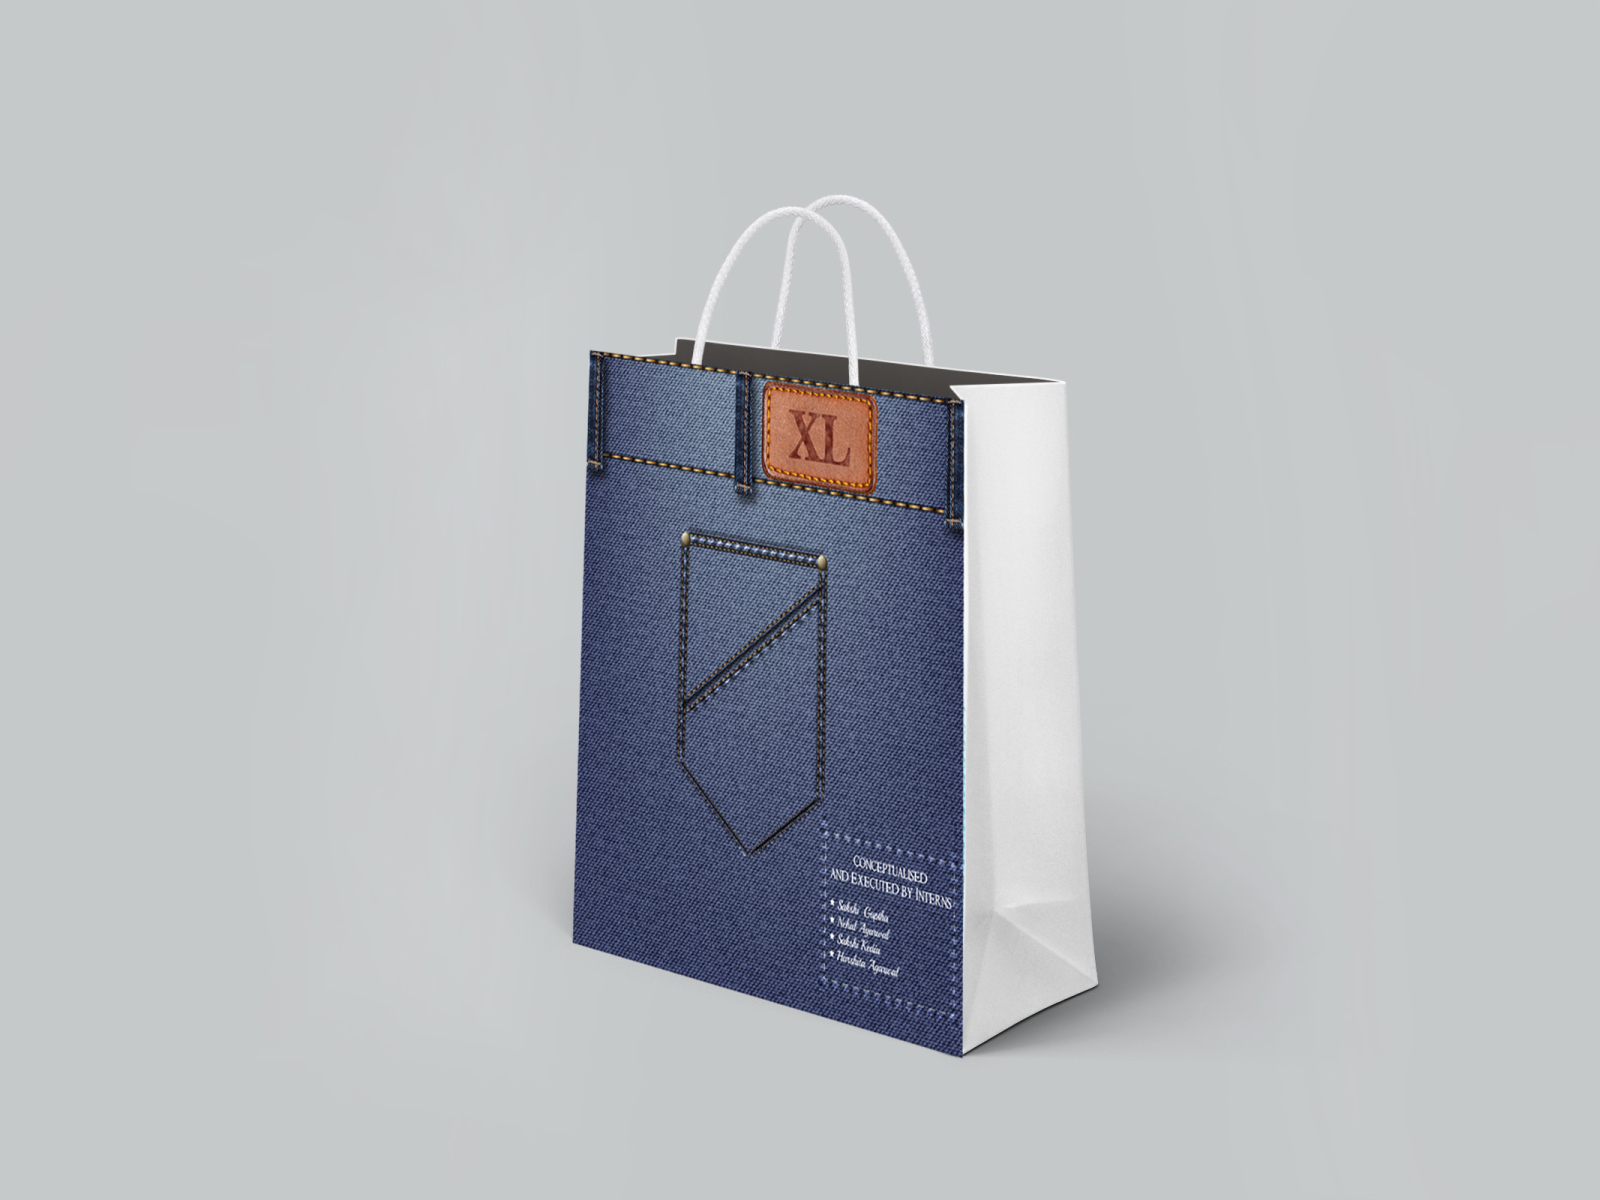 Carry Bag Design Images - Free Download on Freepik